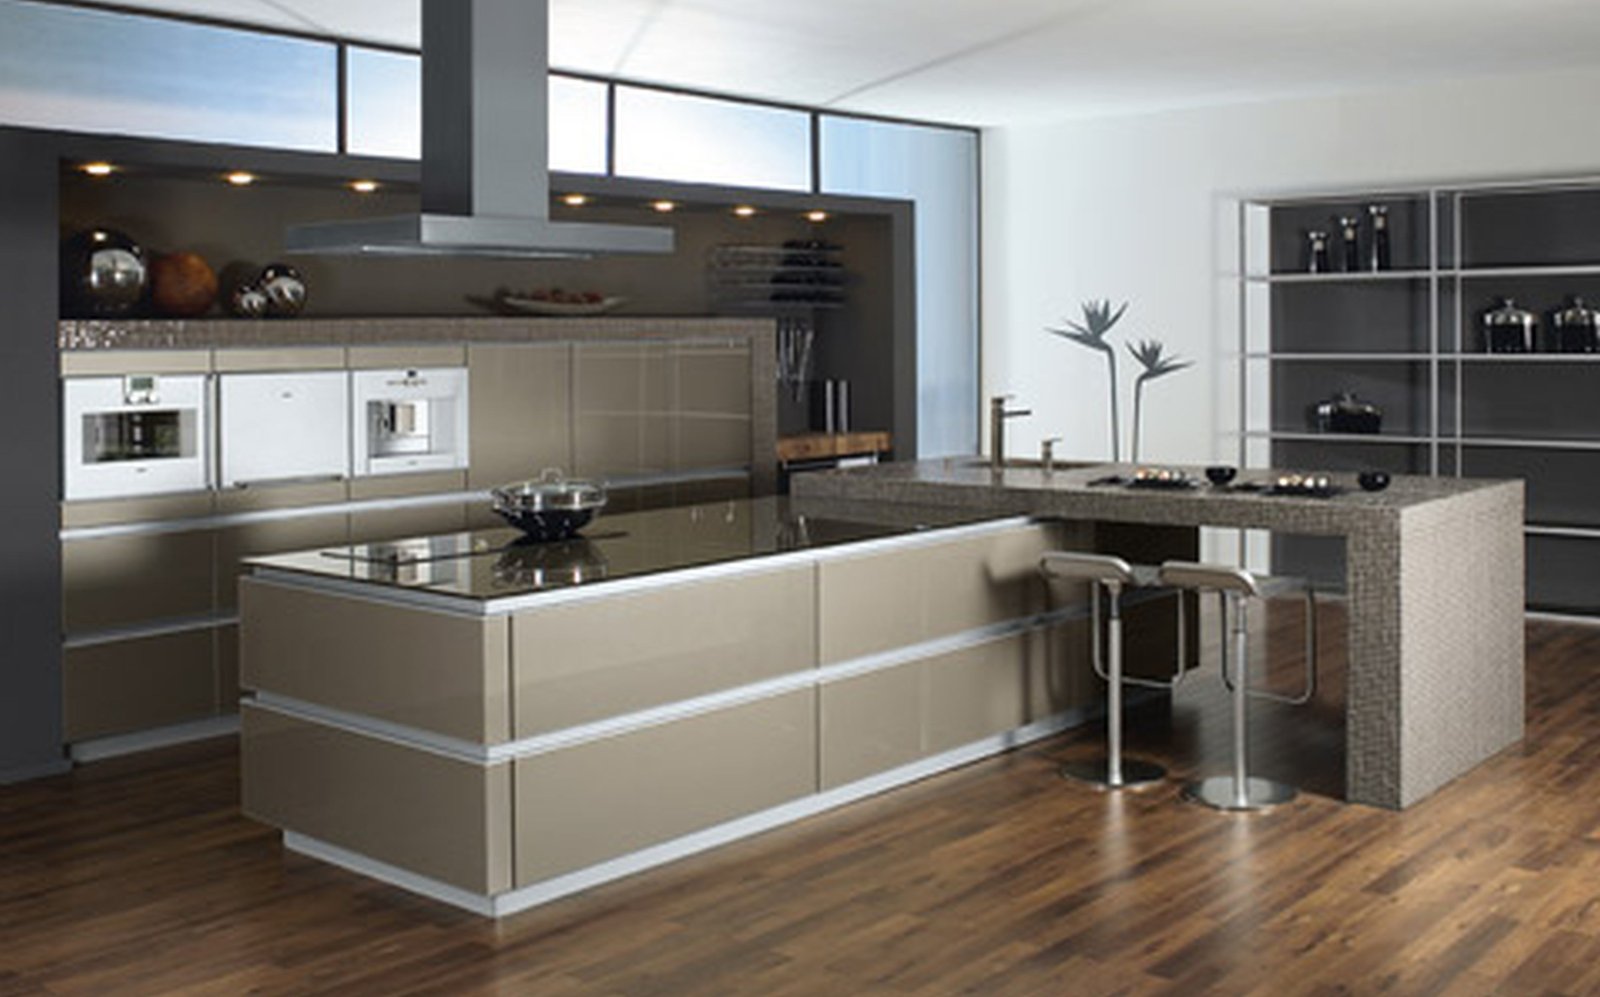 1 room kitchen interior design